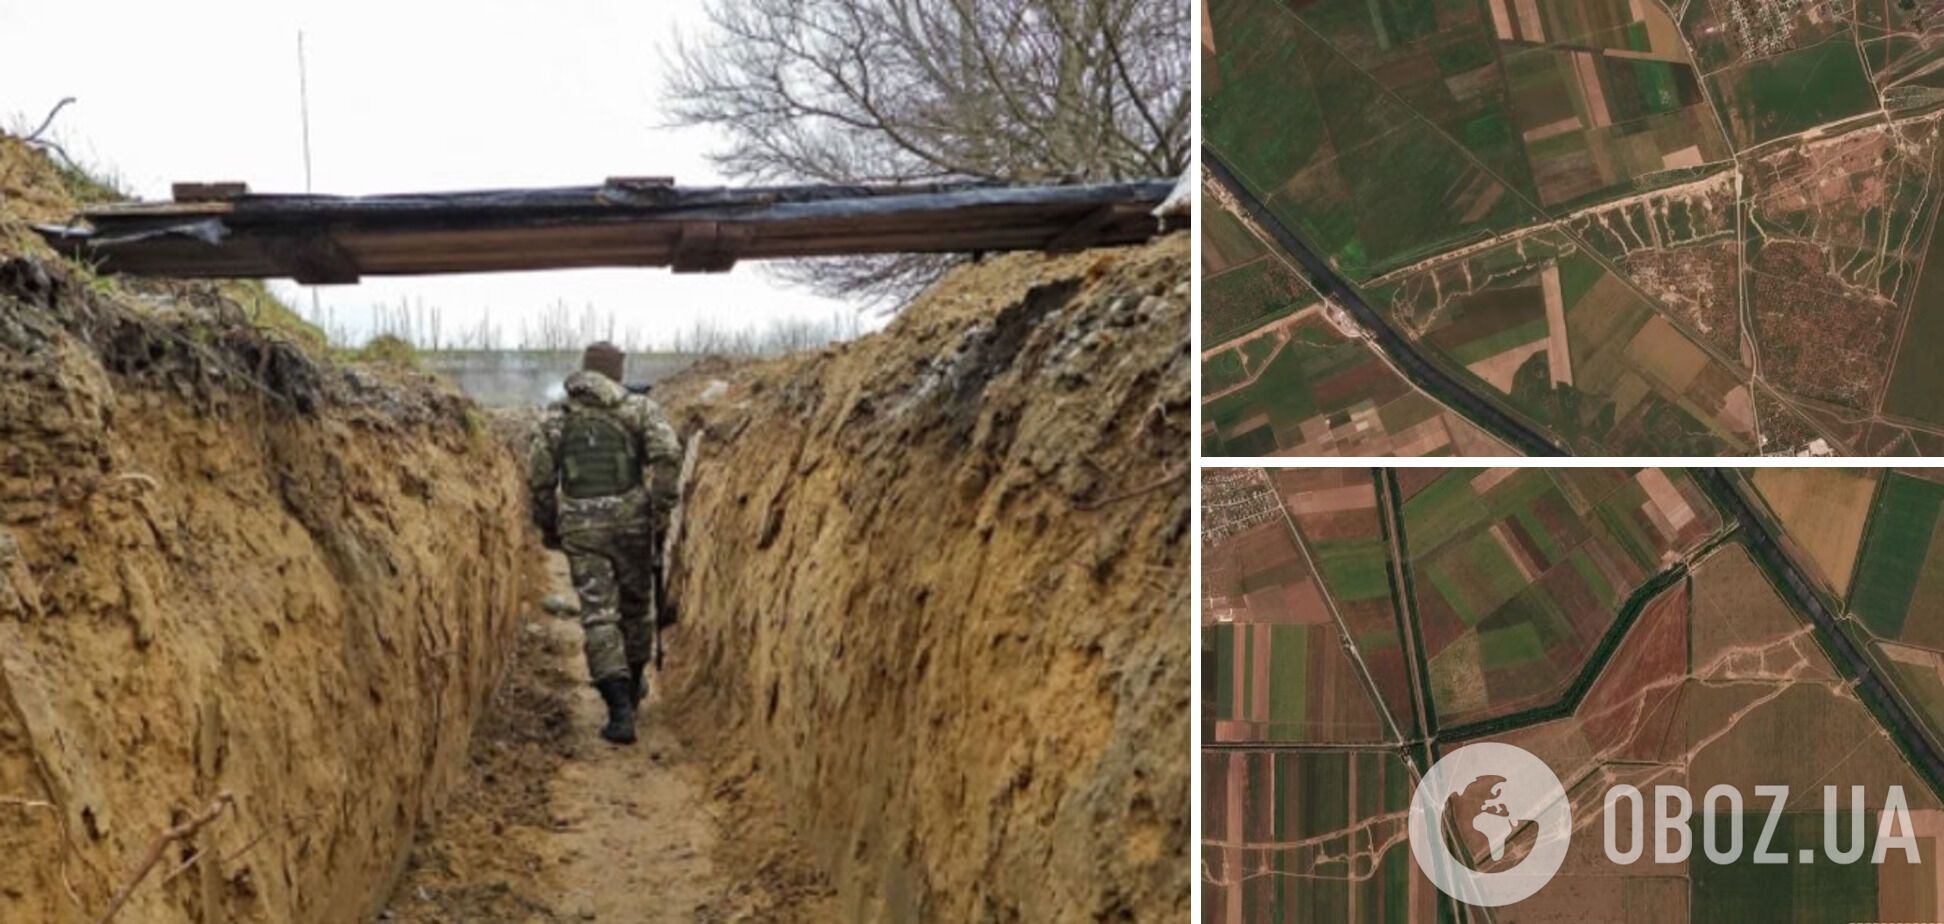 Зводять фортифікації навіть у населених пунктах: як окупанти готуються до оборони в Криму. Супутникові фото